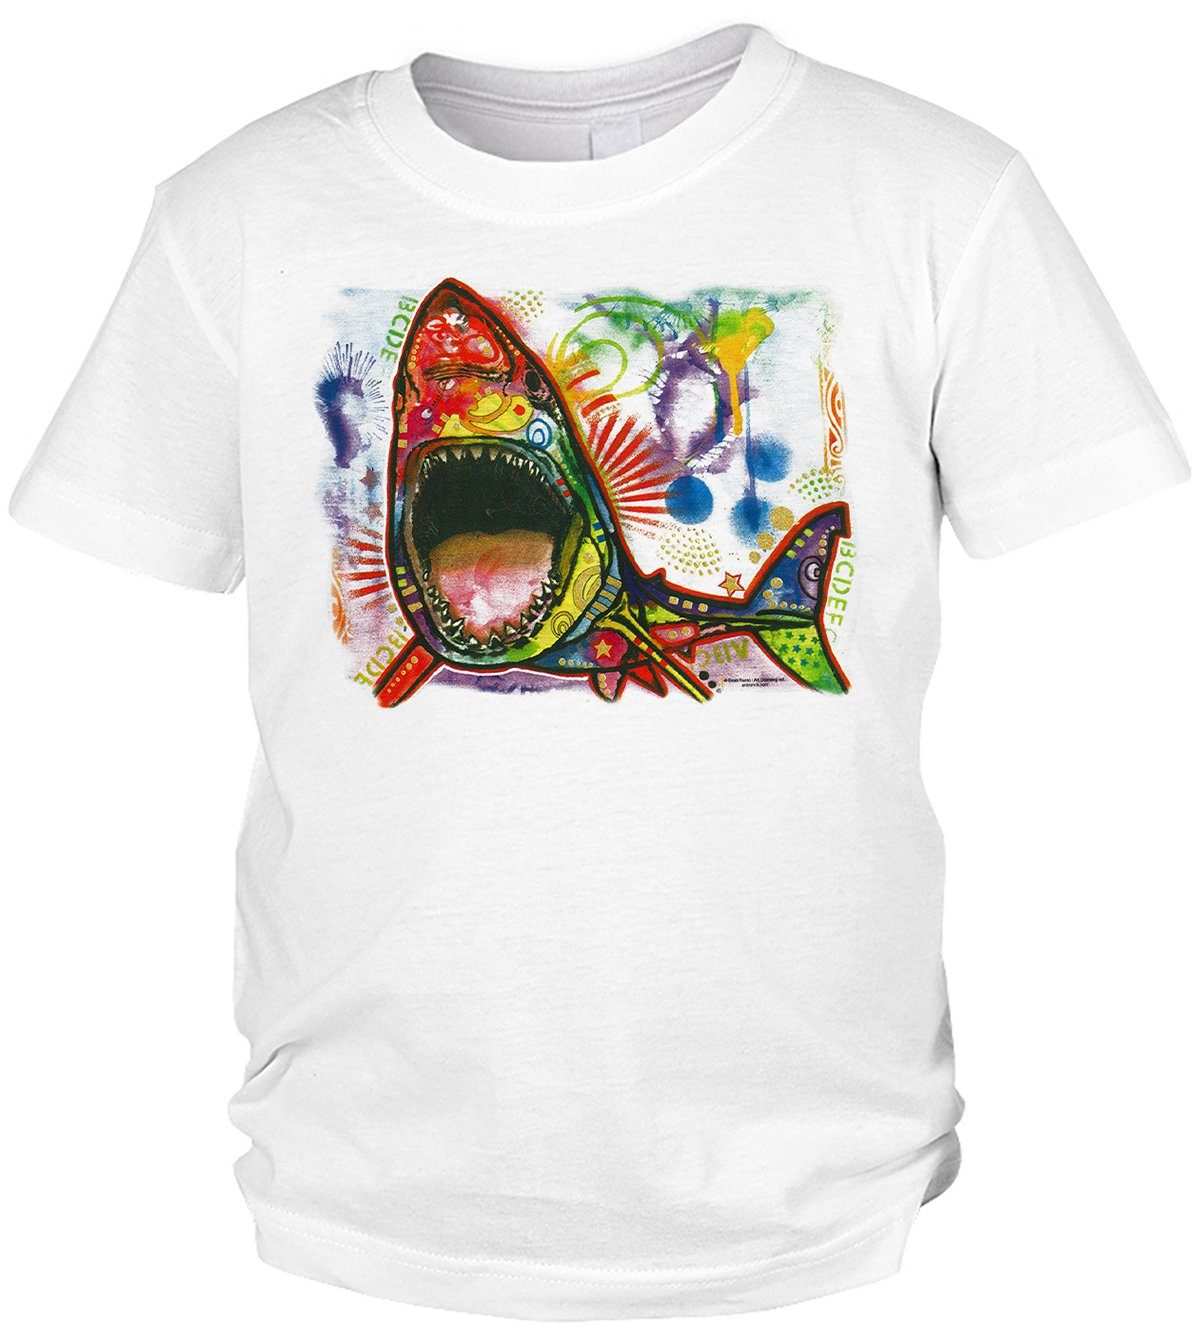 Kinder Shirts Tini - Shirts Print-Shirt Hai Motiv Kindershirt buntes Haishirt für Kinder : Shark